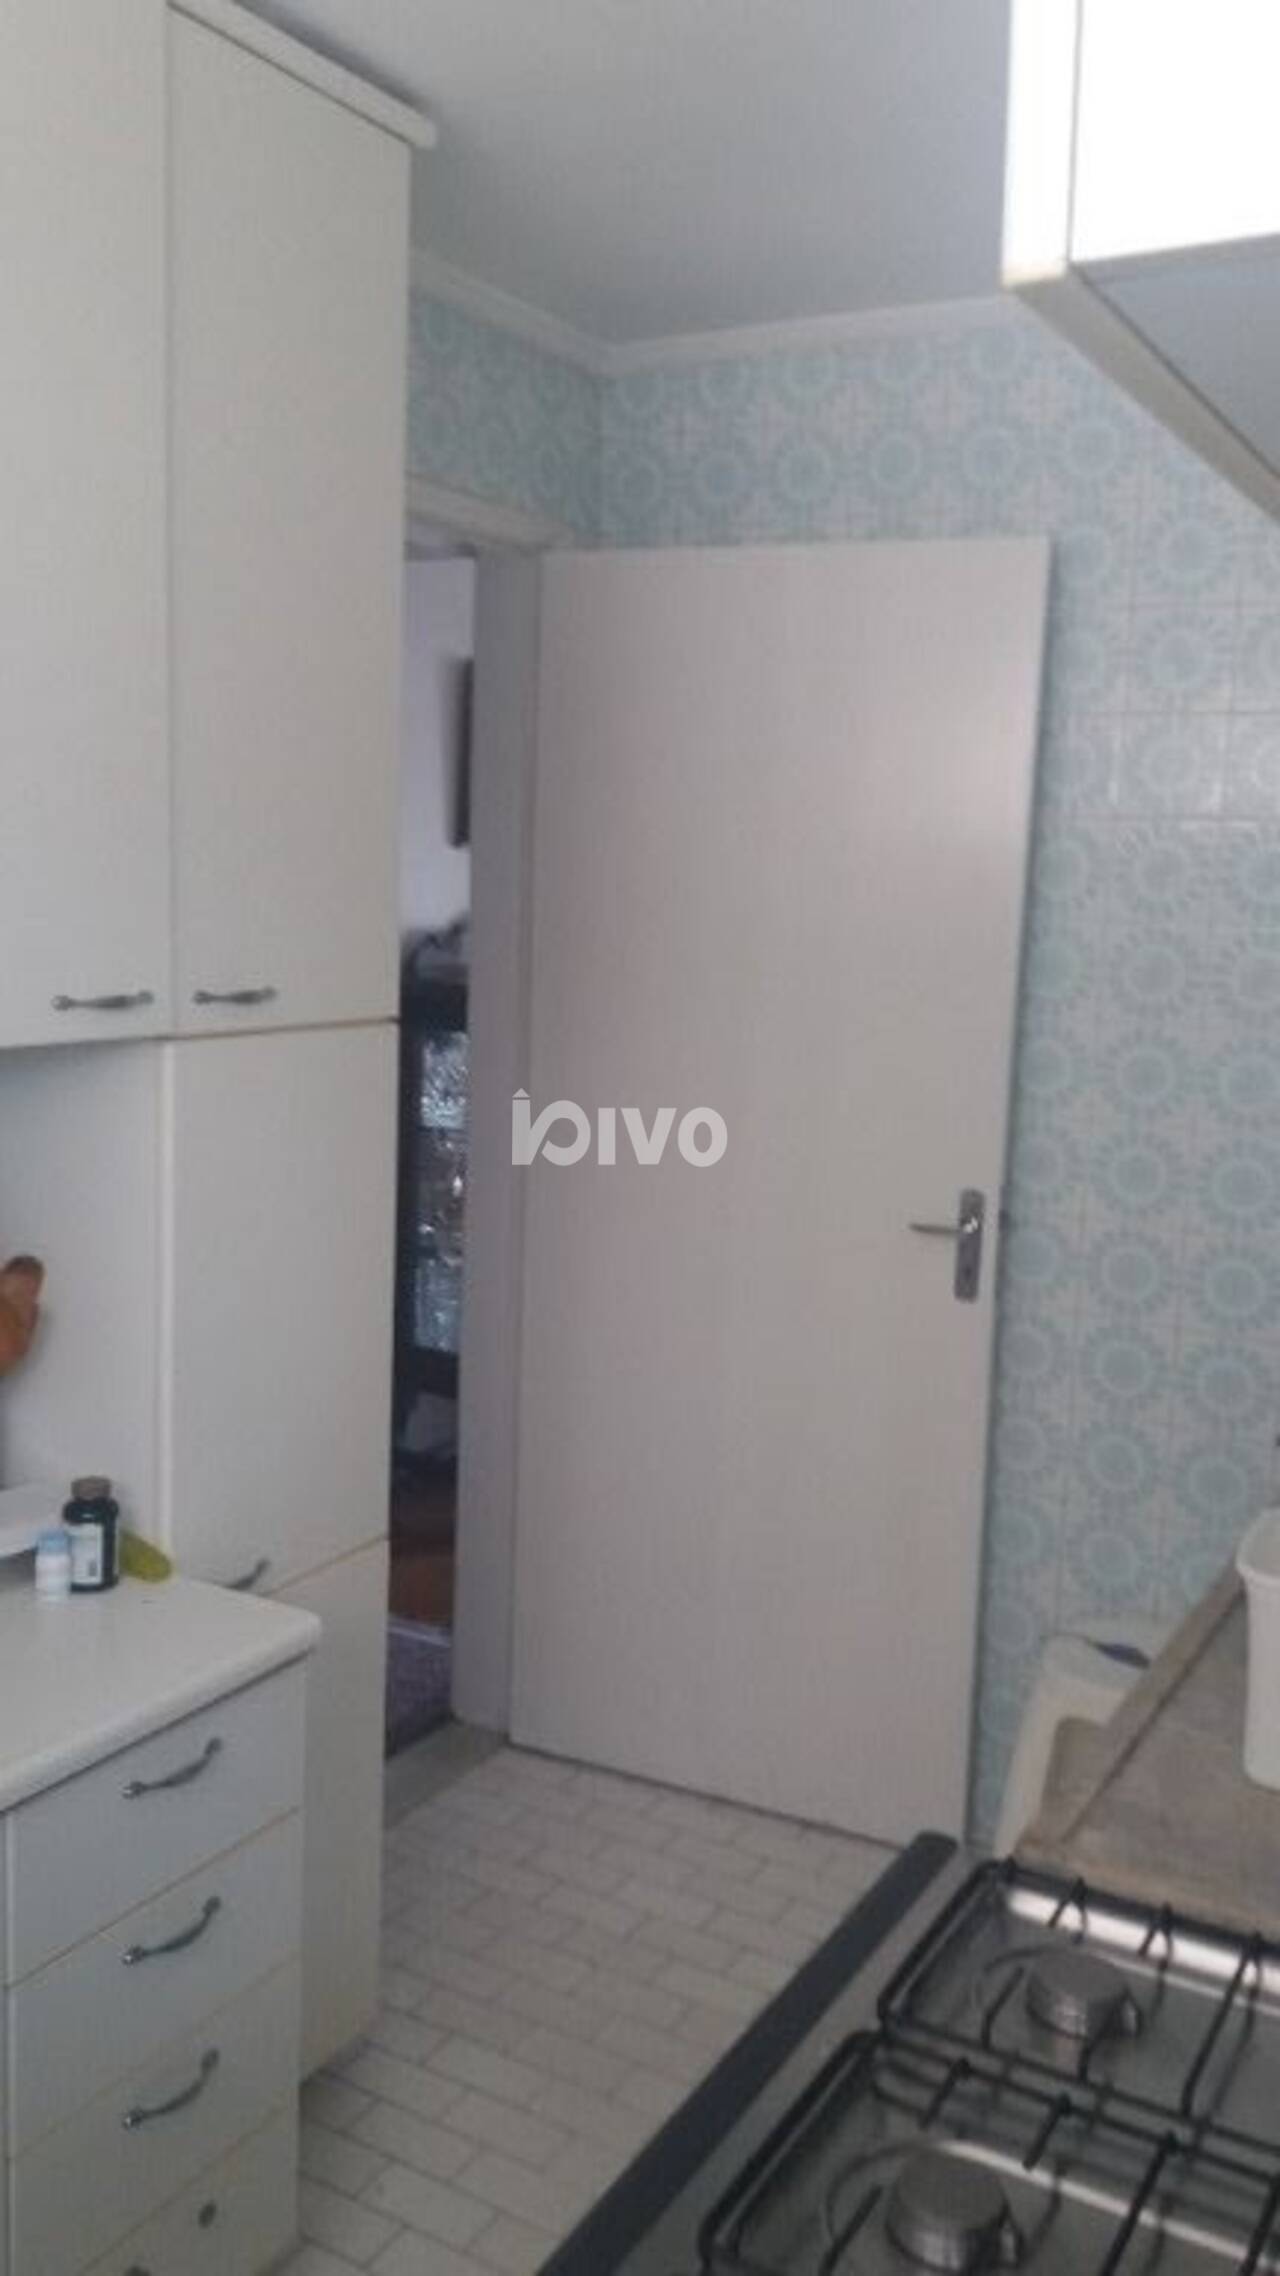 Apartamento Vila Clementino	, São Paulo - SP